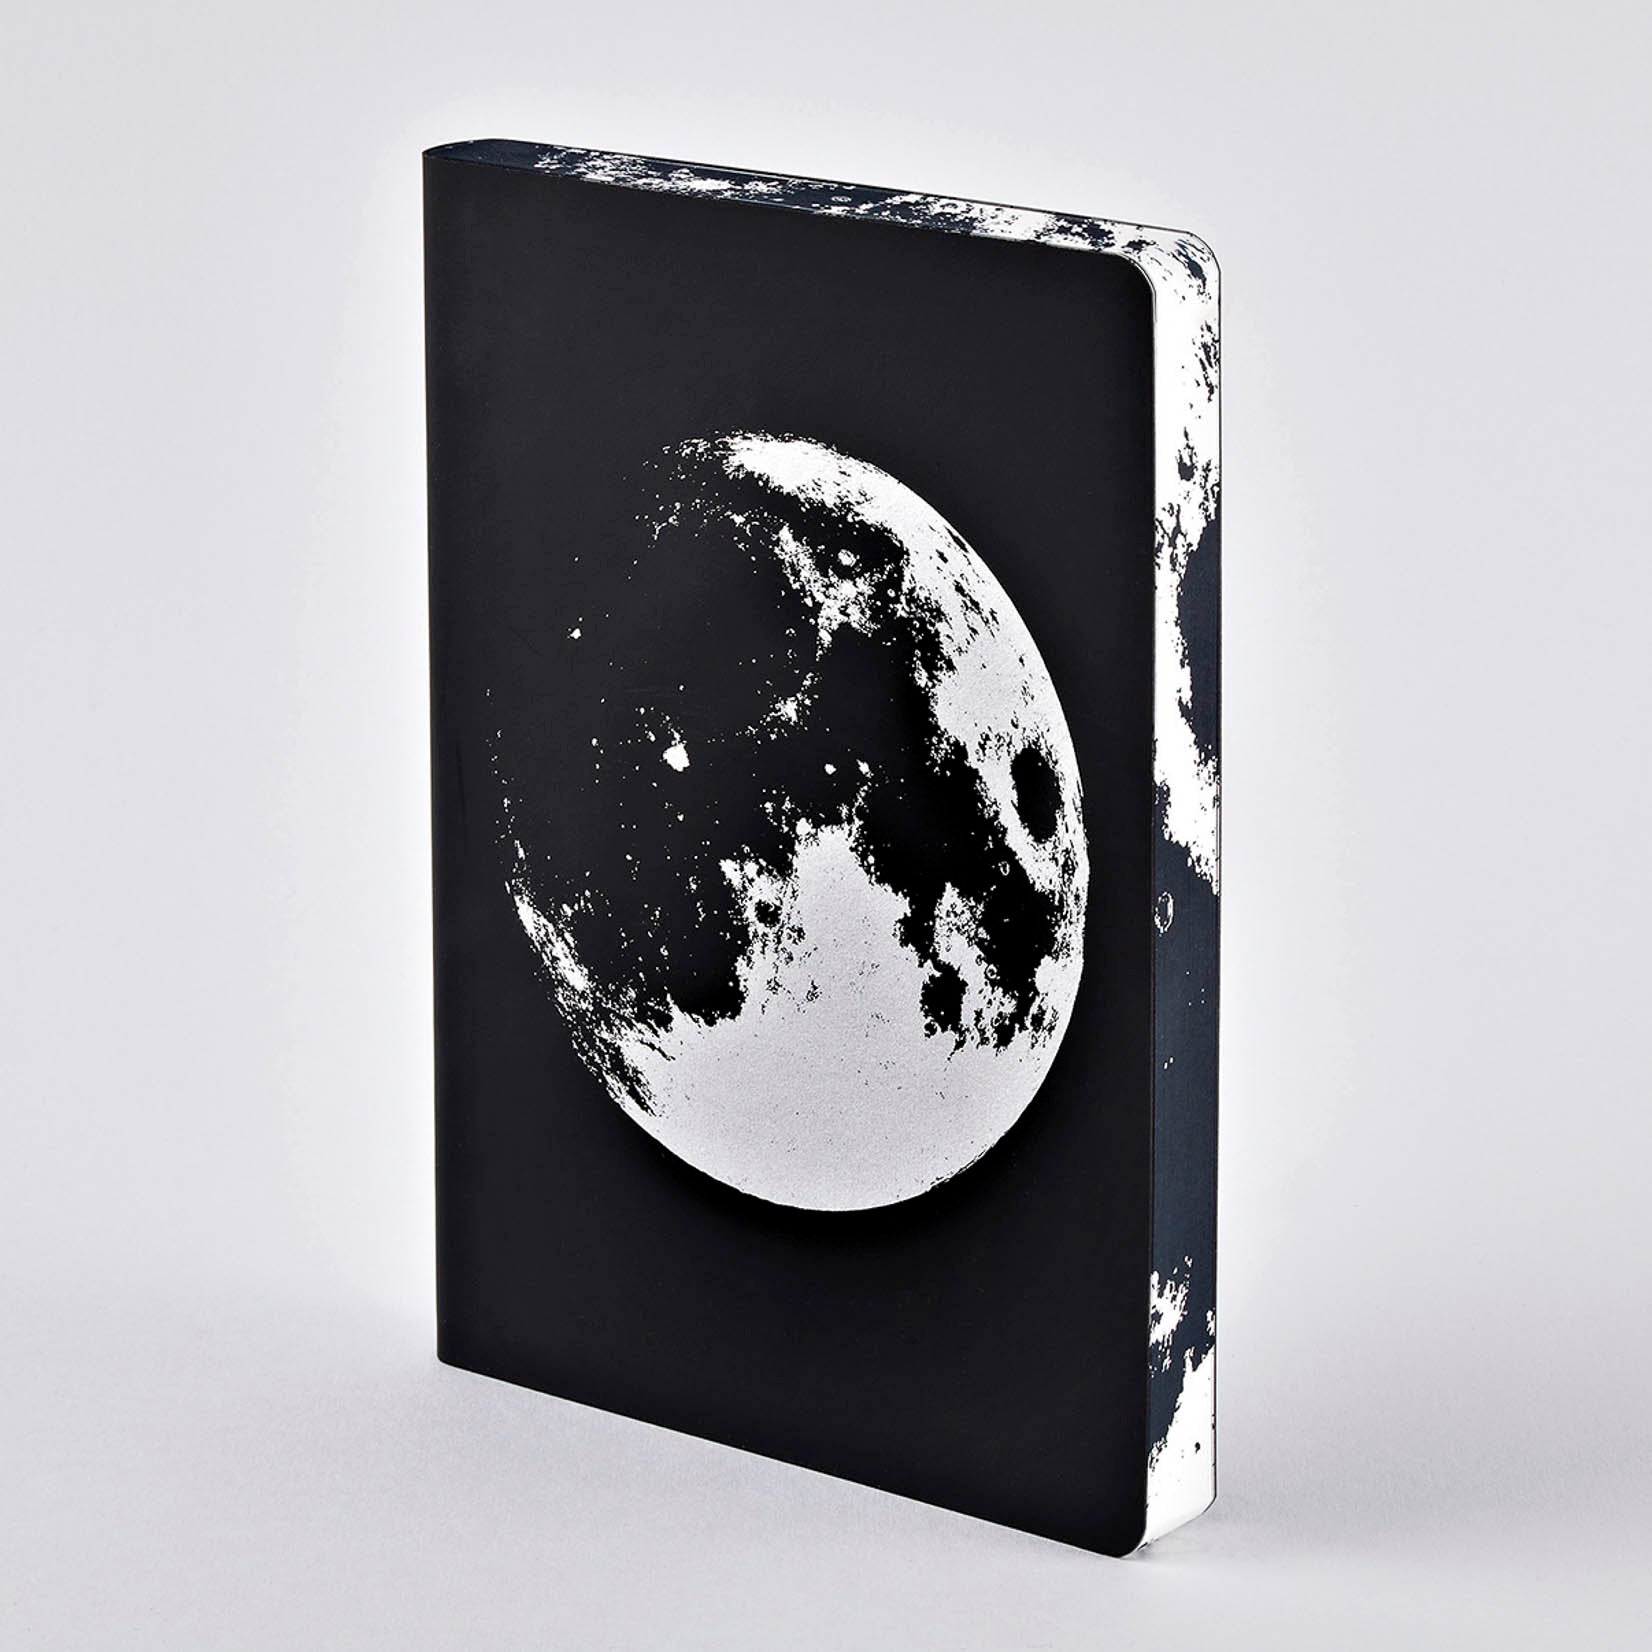 nuuna Graphic L Notizbuch Notebook Notizheft brandbook moon Mond bei Nacht schwarz